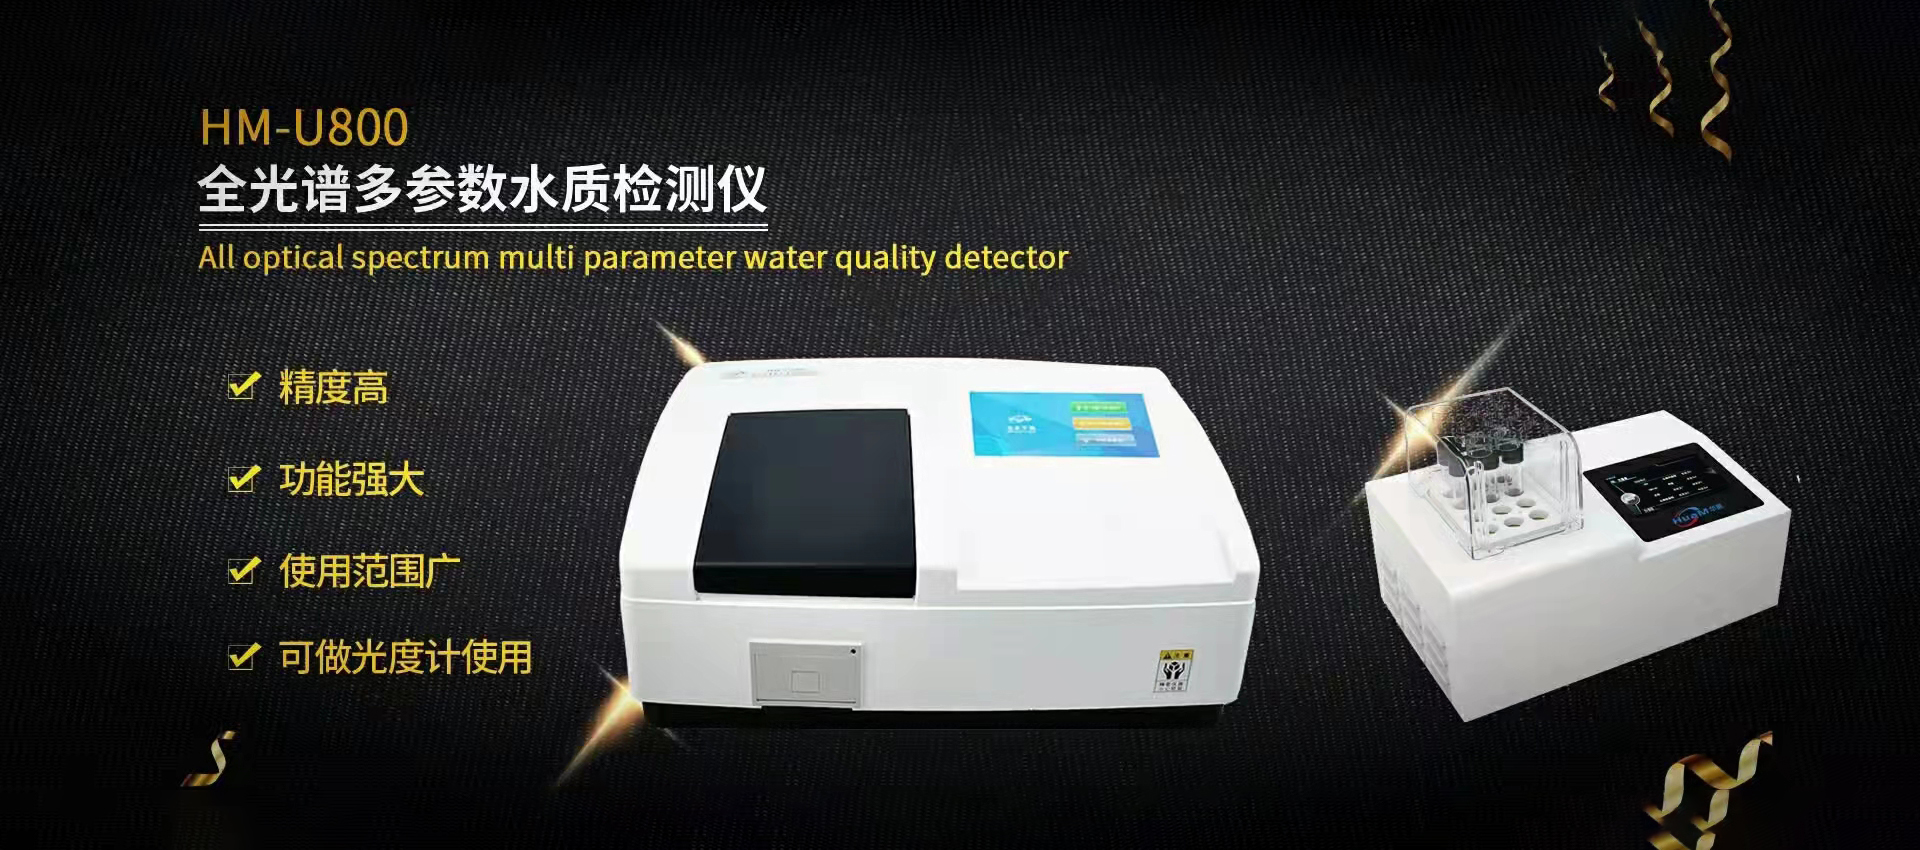 HM-U800全光譜多參數水質檢測儀.jpg